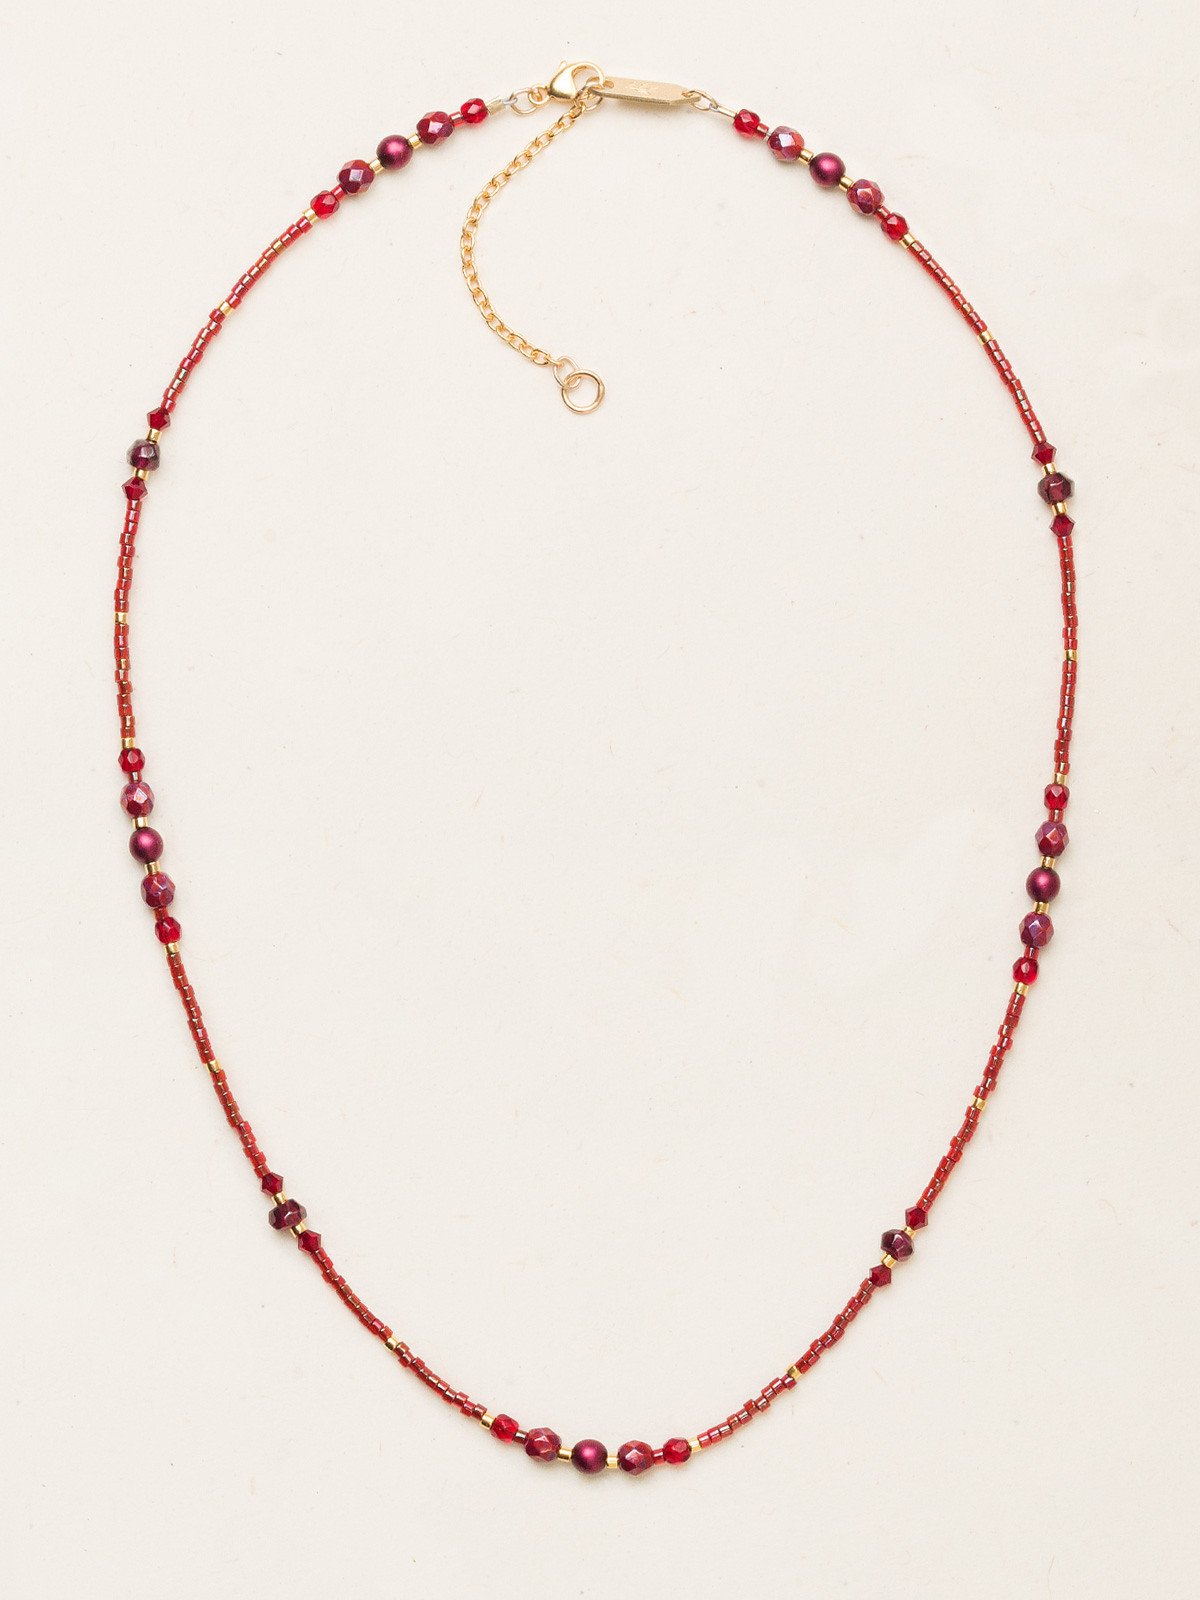 Holly Yashi Sonoma Glass Bead Necklace - Merlot    